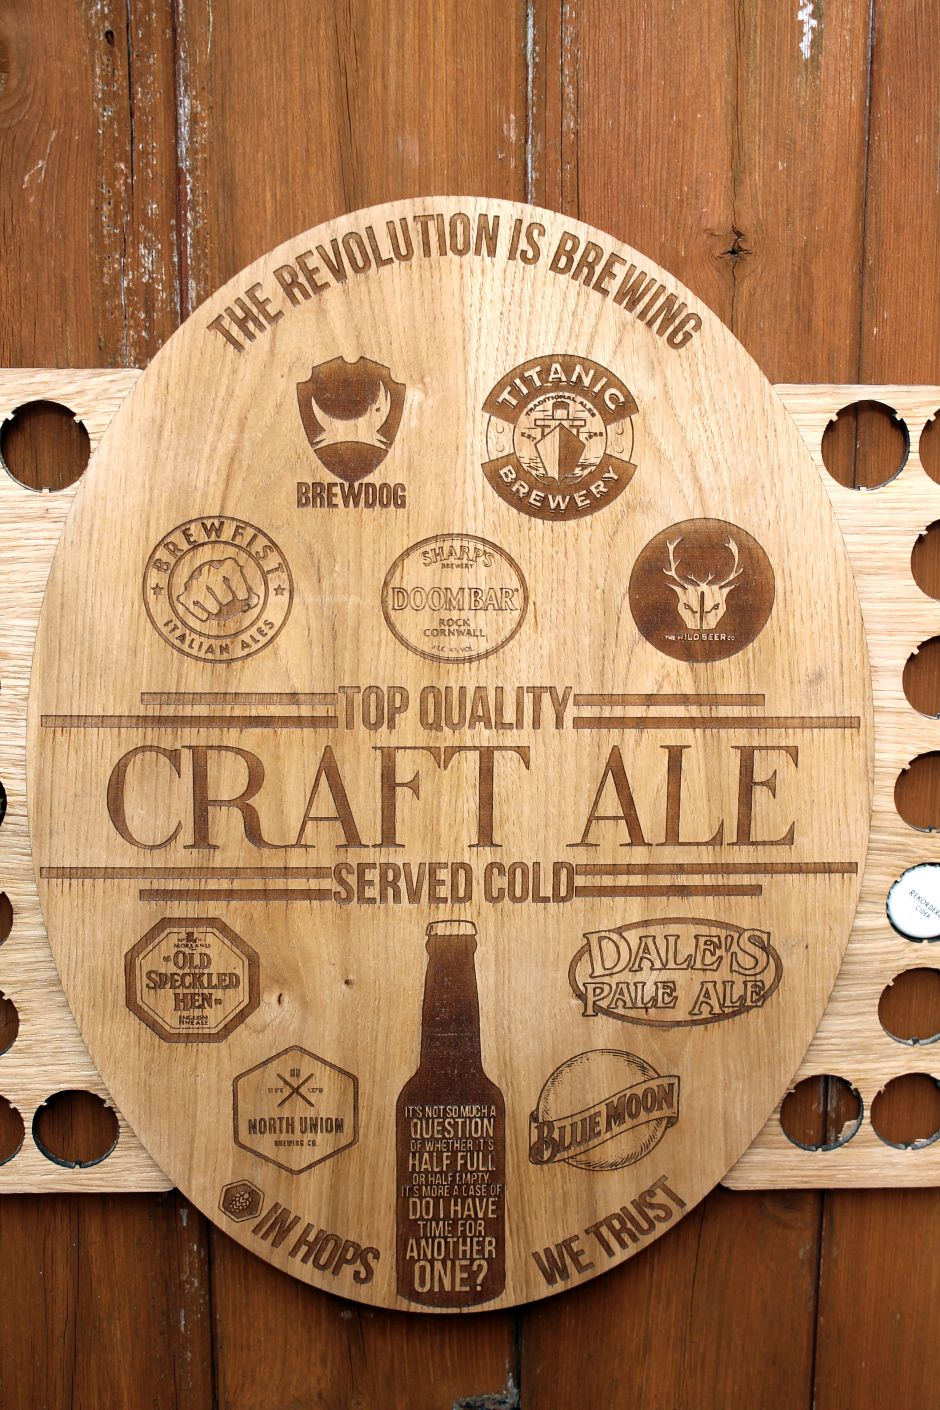 Craft Ale Bottle Cap Collection Beer Cap Gift Art Breweries Beer